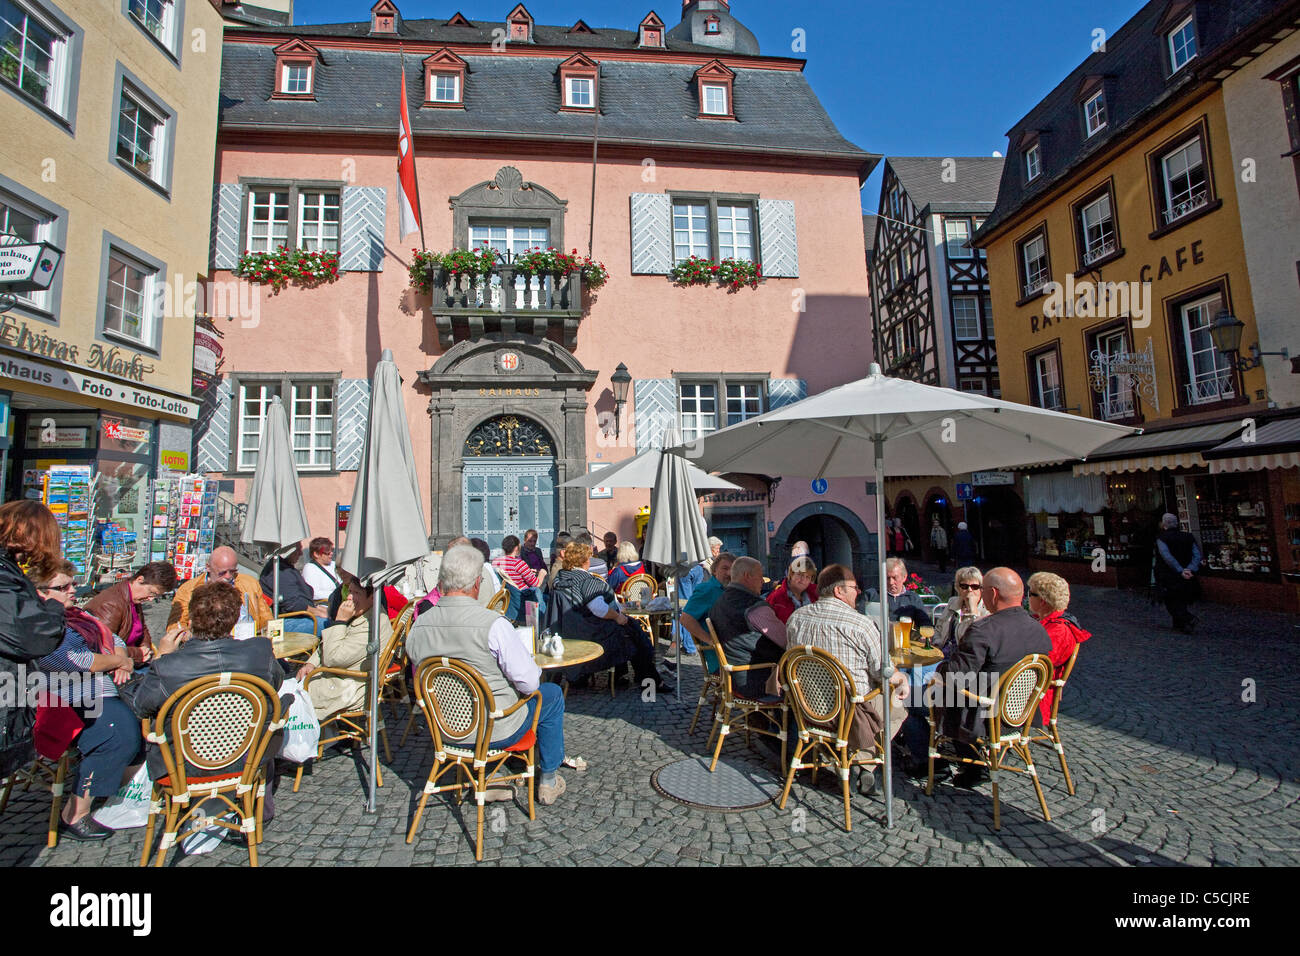 Rathauscafe auf dem Marktplatz, Rathaus, historischer Stadtkern Cochem, Town hall cafe, people sitting at the market place Stock Photo